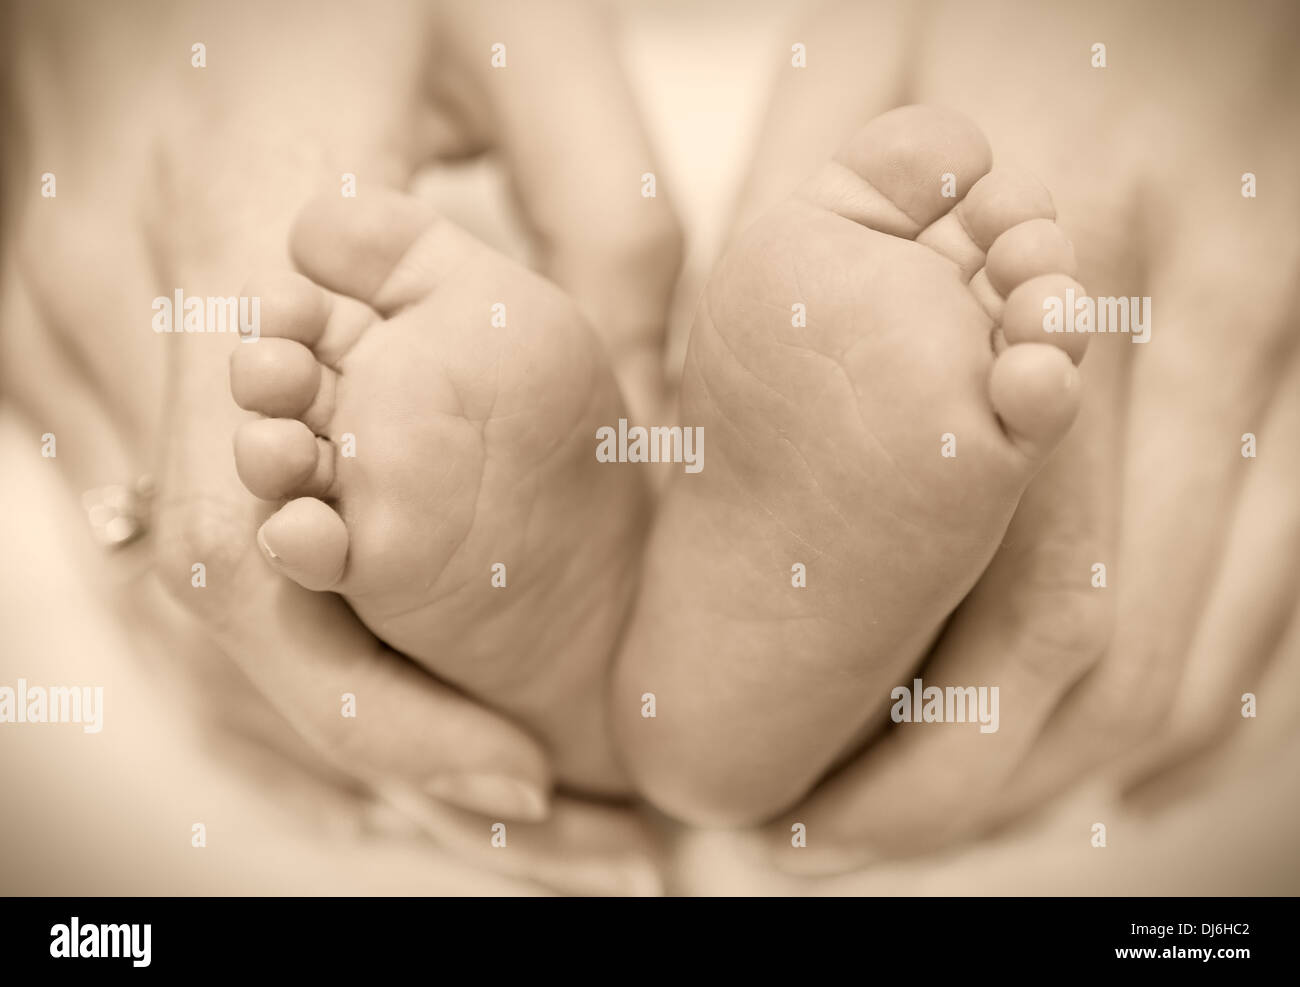 Bébé nouveau-né pieds sur les mains des femmes Banque D'Images